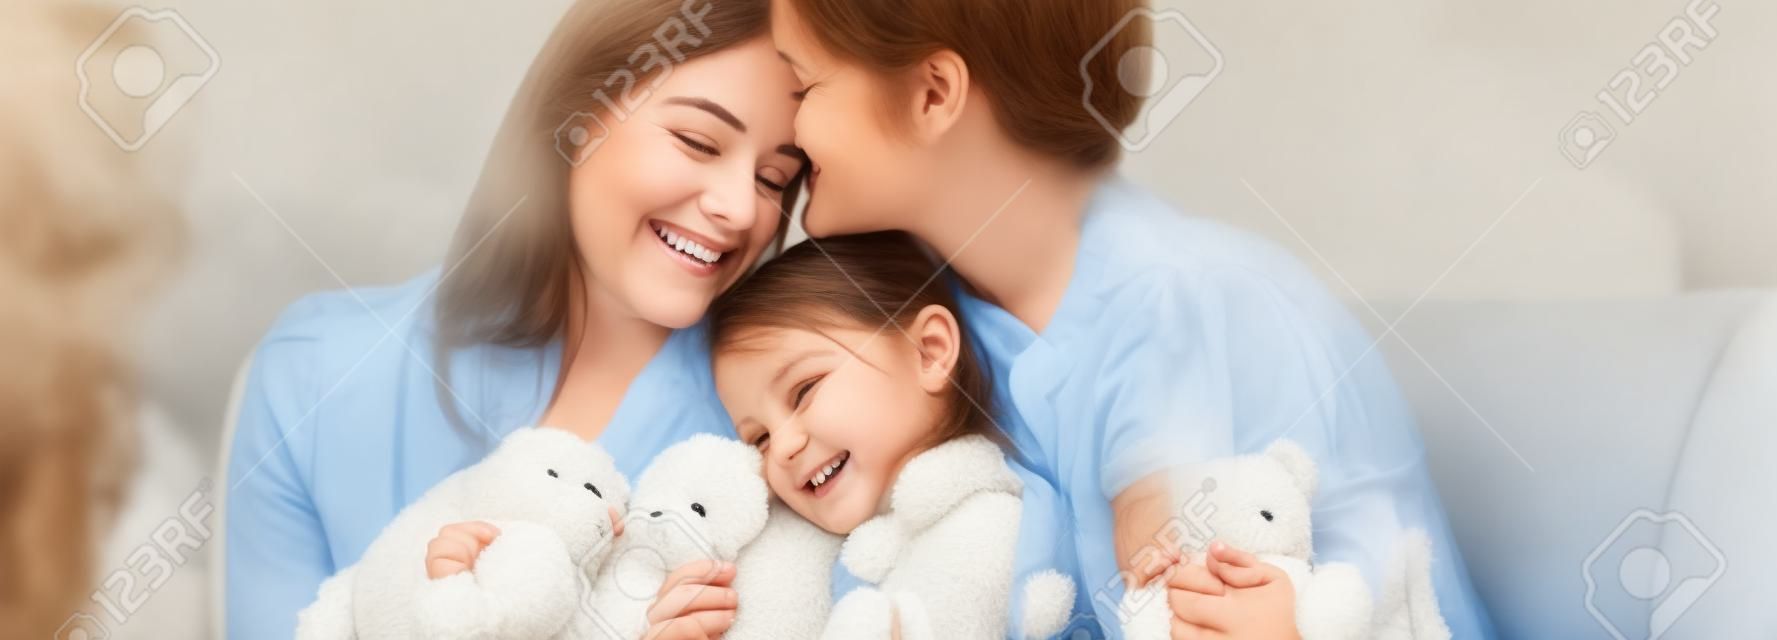 Madres felices abrazando a su hija sonriente con osito de peluche en el sofá, tiro panorámico